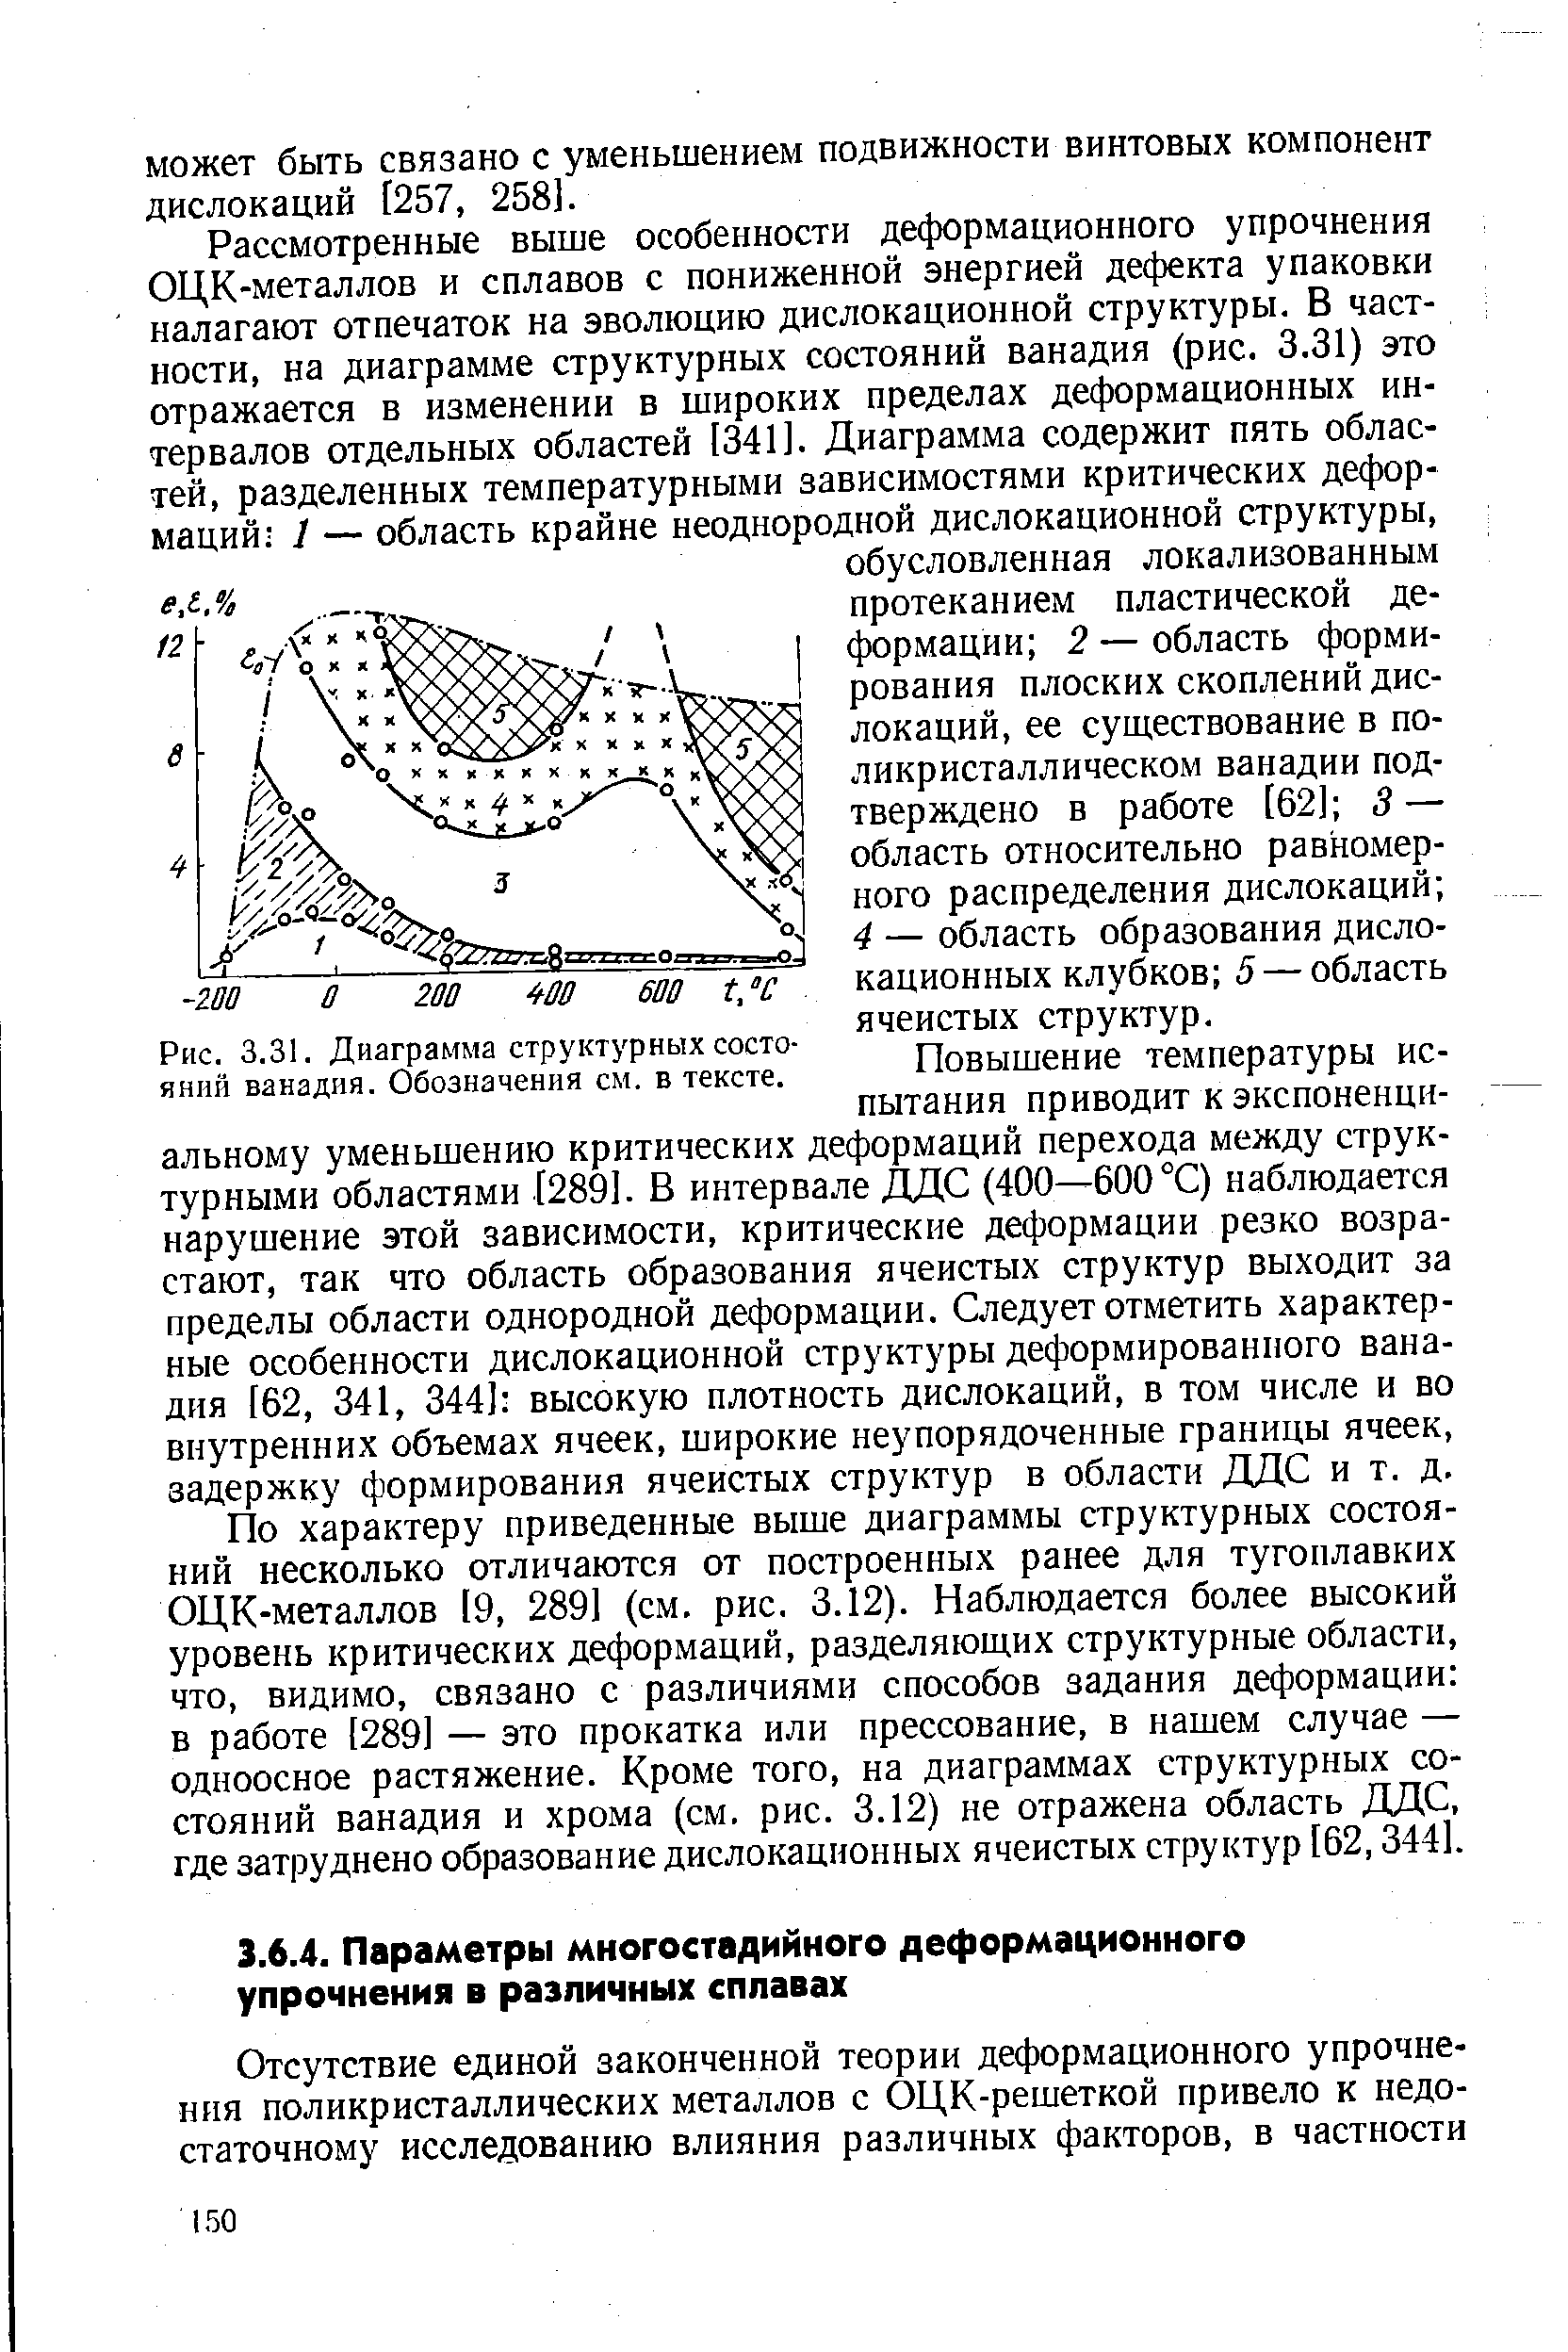 Рис. 3.31. Диаграмма структурных состояний ванадия. Обозначения см. в тексте.
